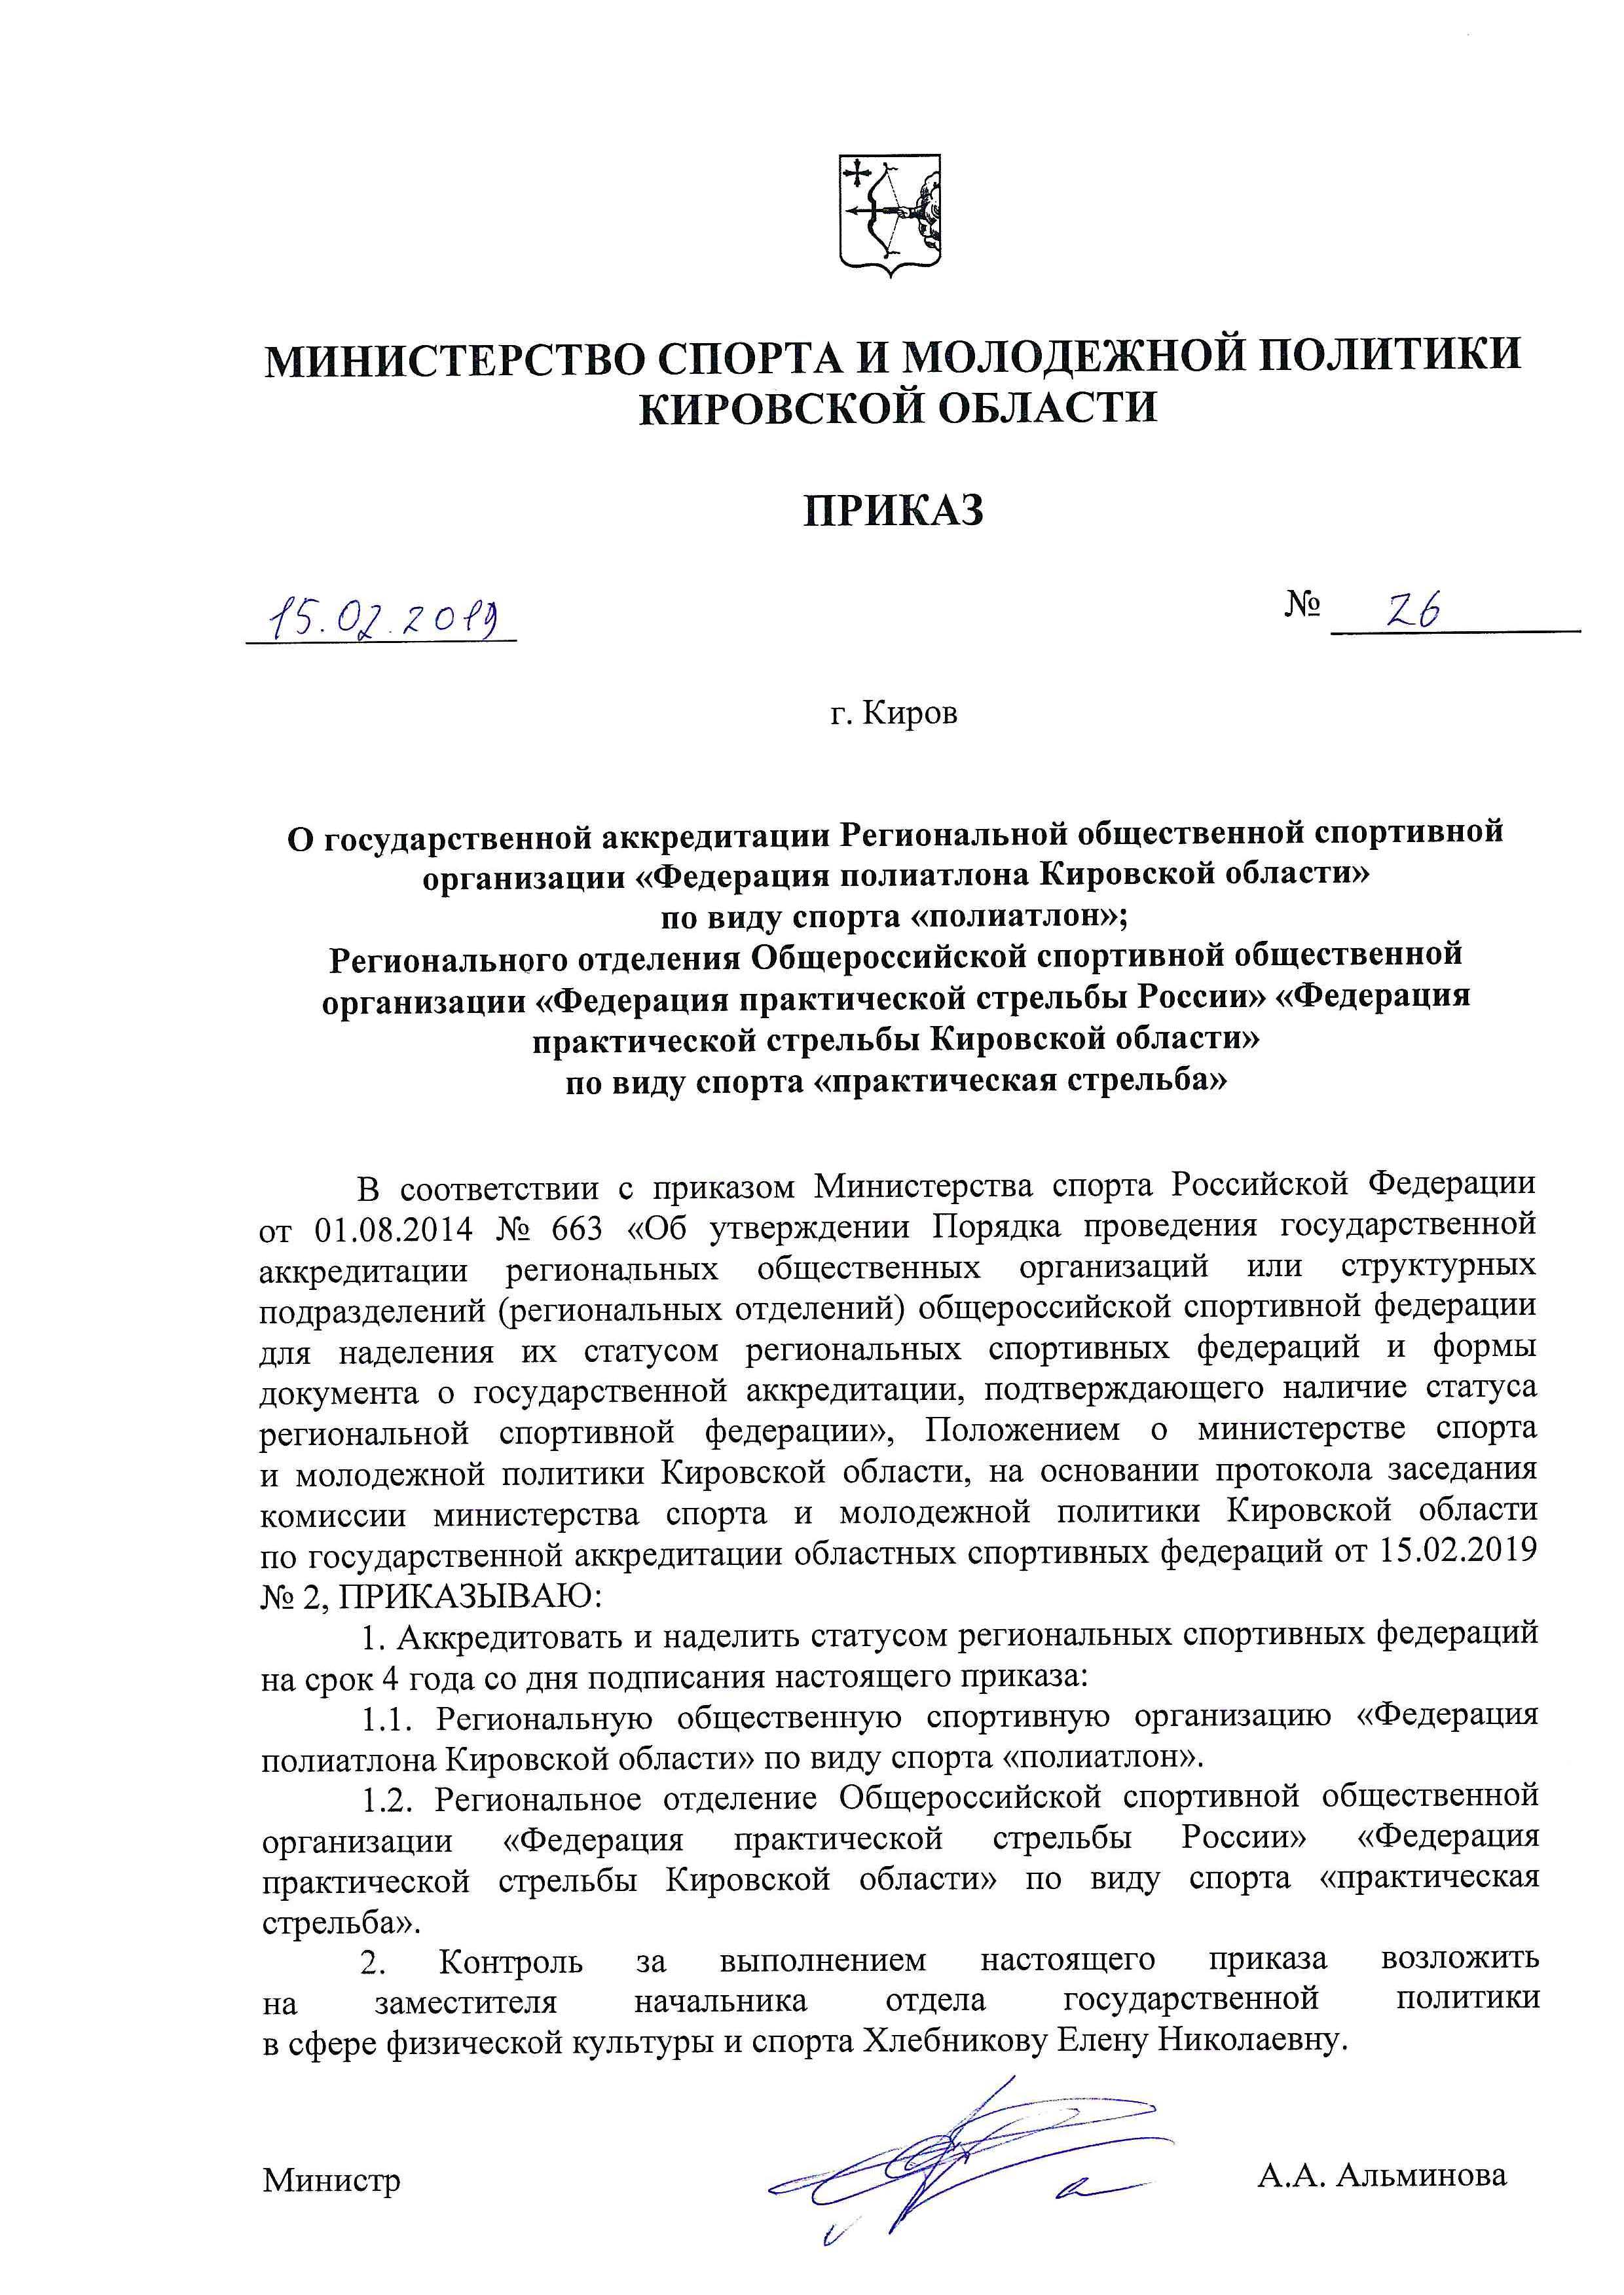 Федерация практической стрельбы Кировской области успешно прошла аккредитацию 